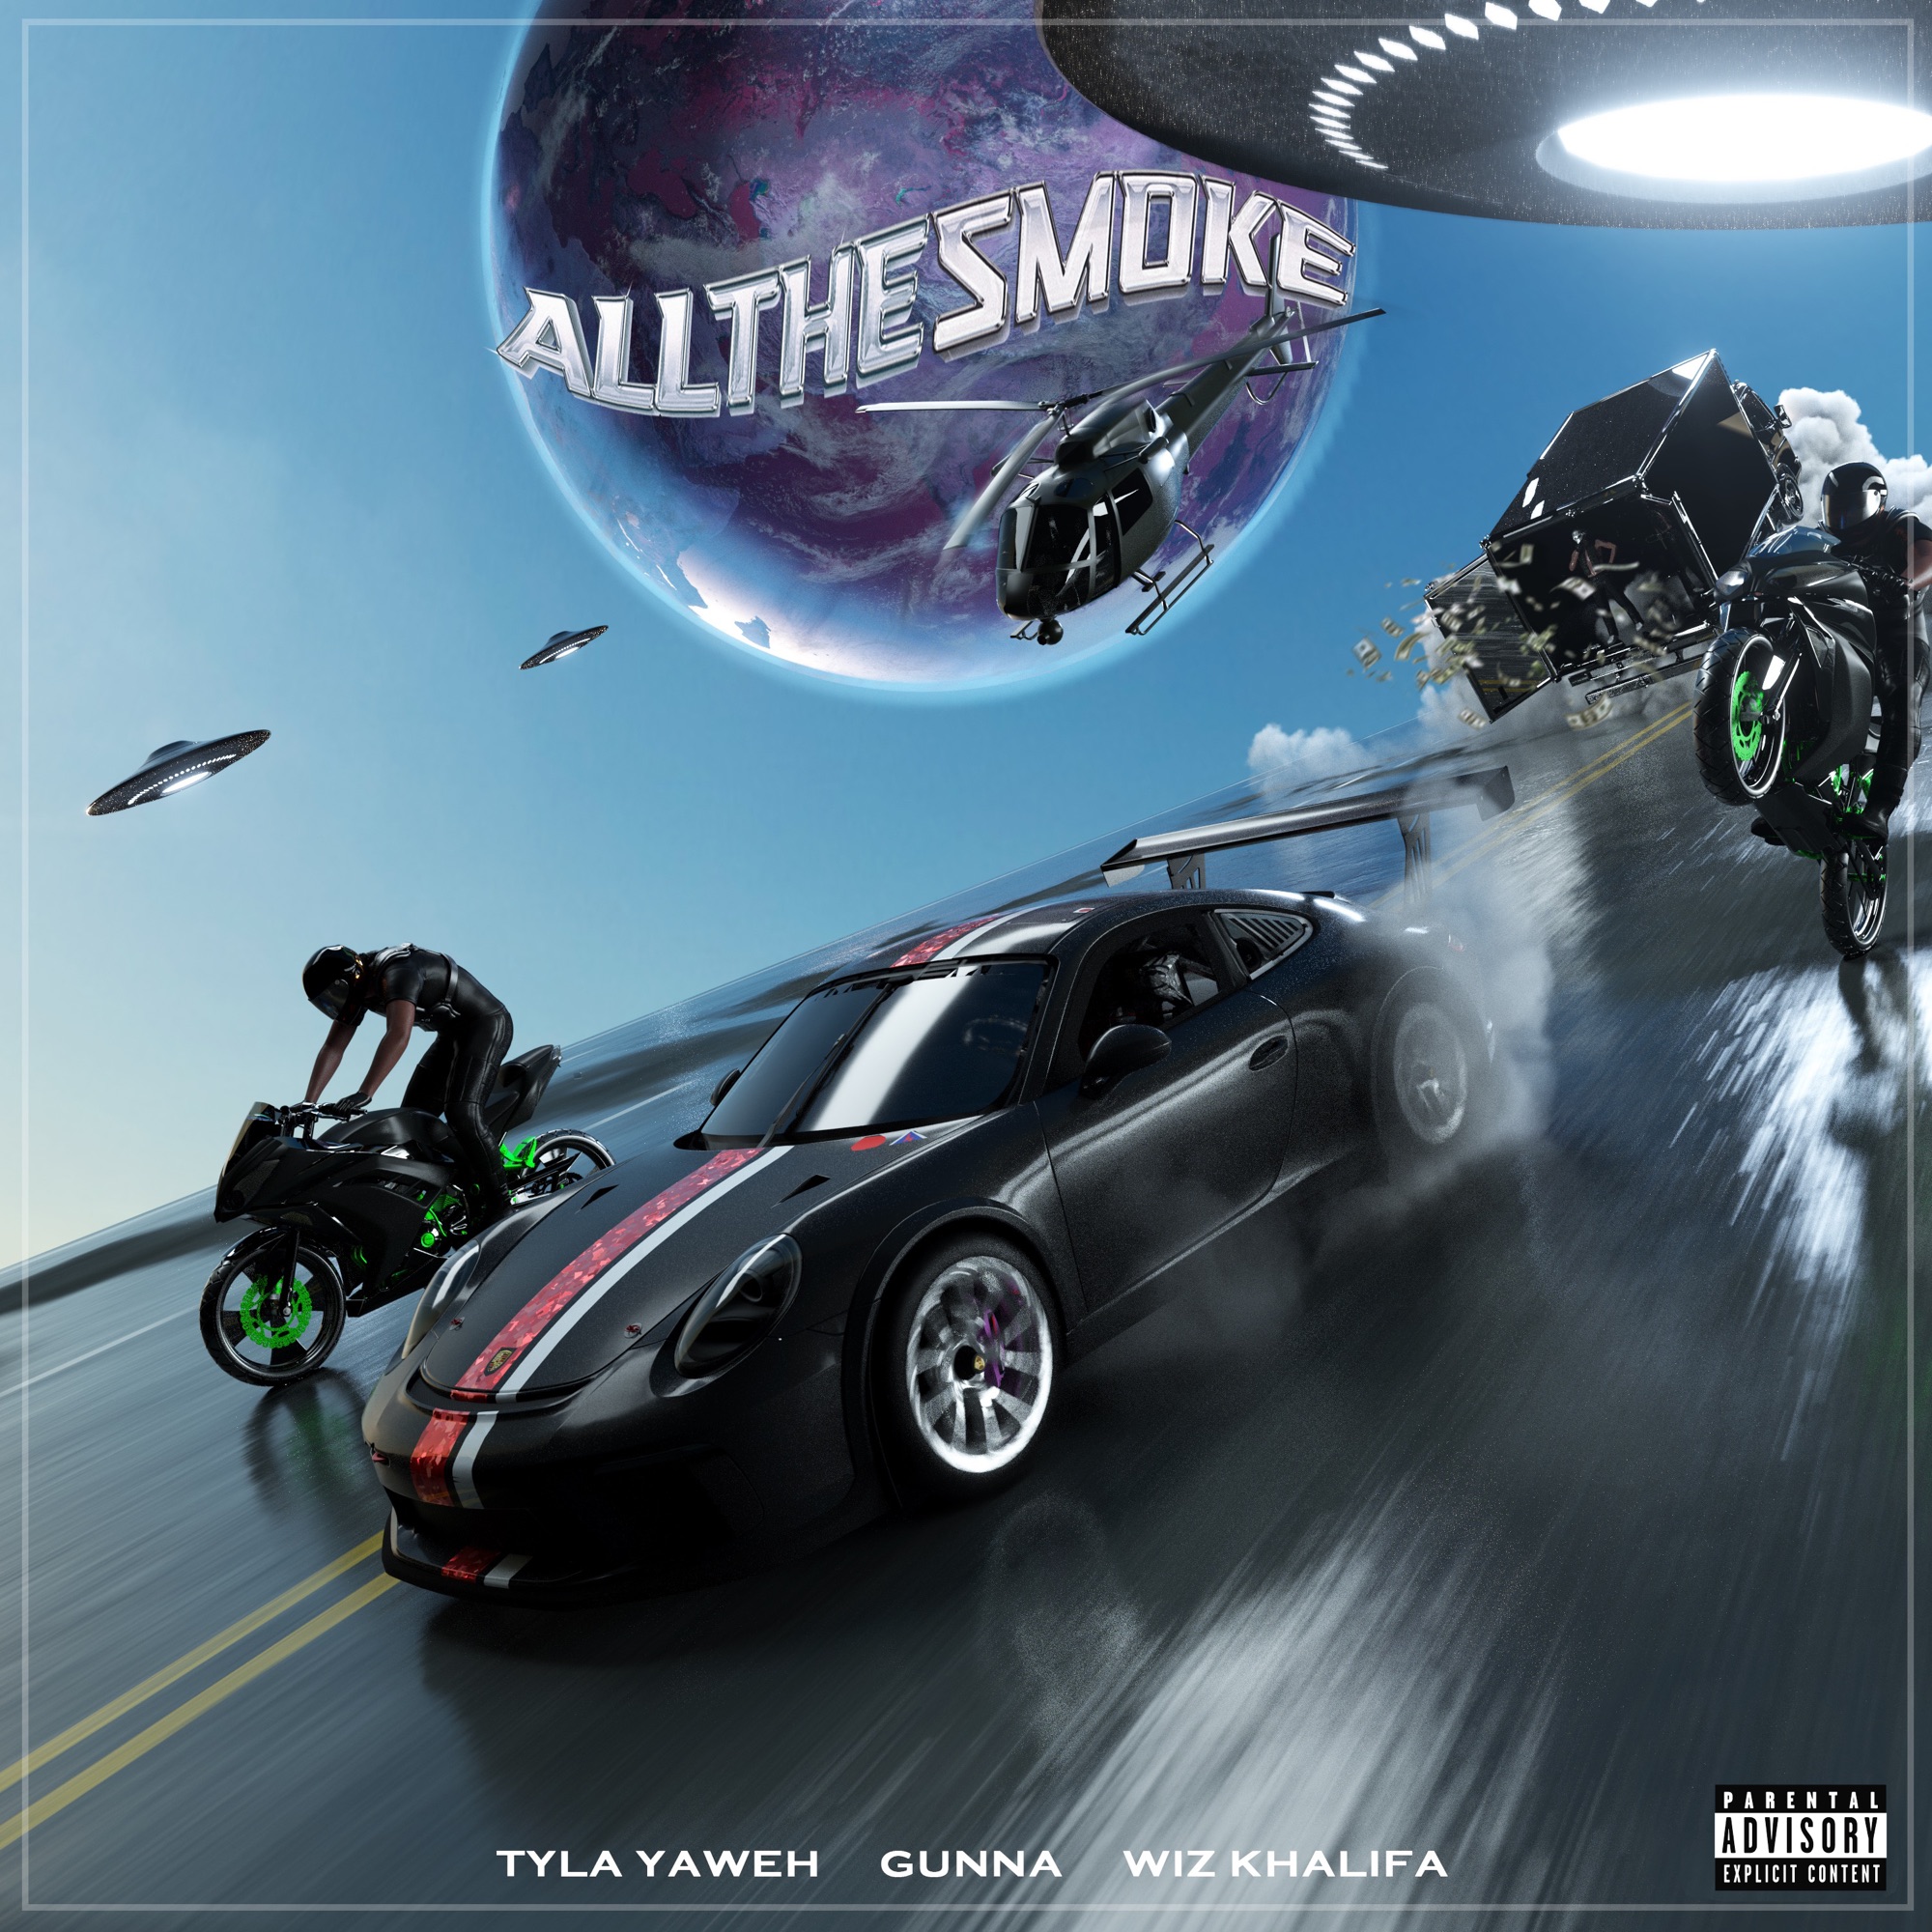 Tyla Yaweh - All the Smoke (feat. Gunna & Wiz Khalifa) - Single